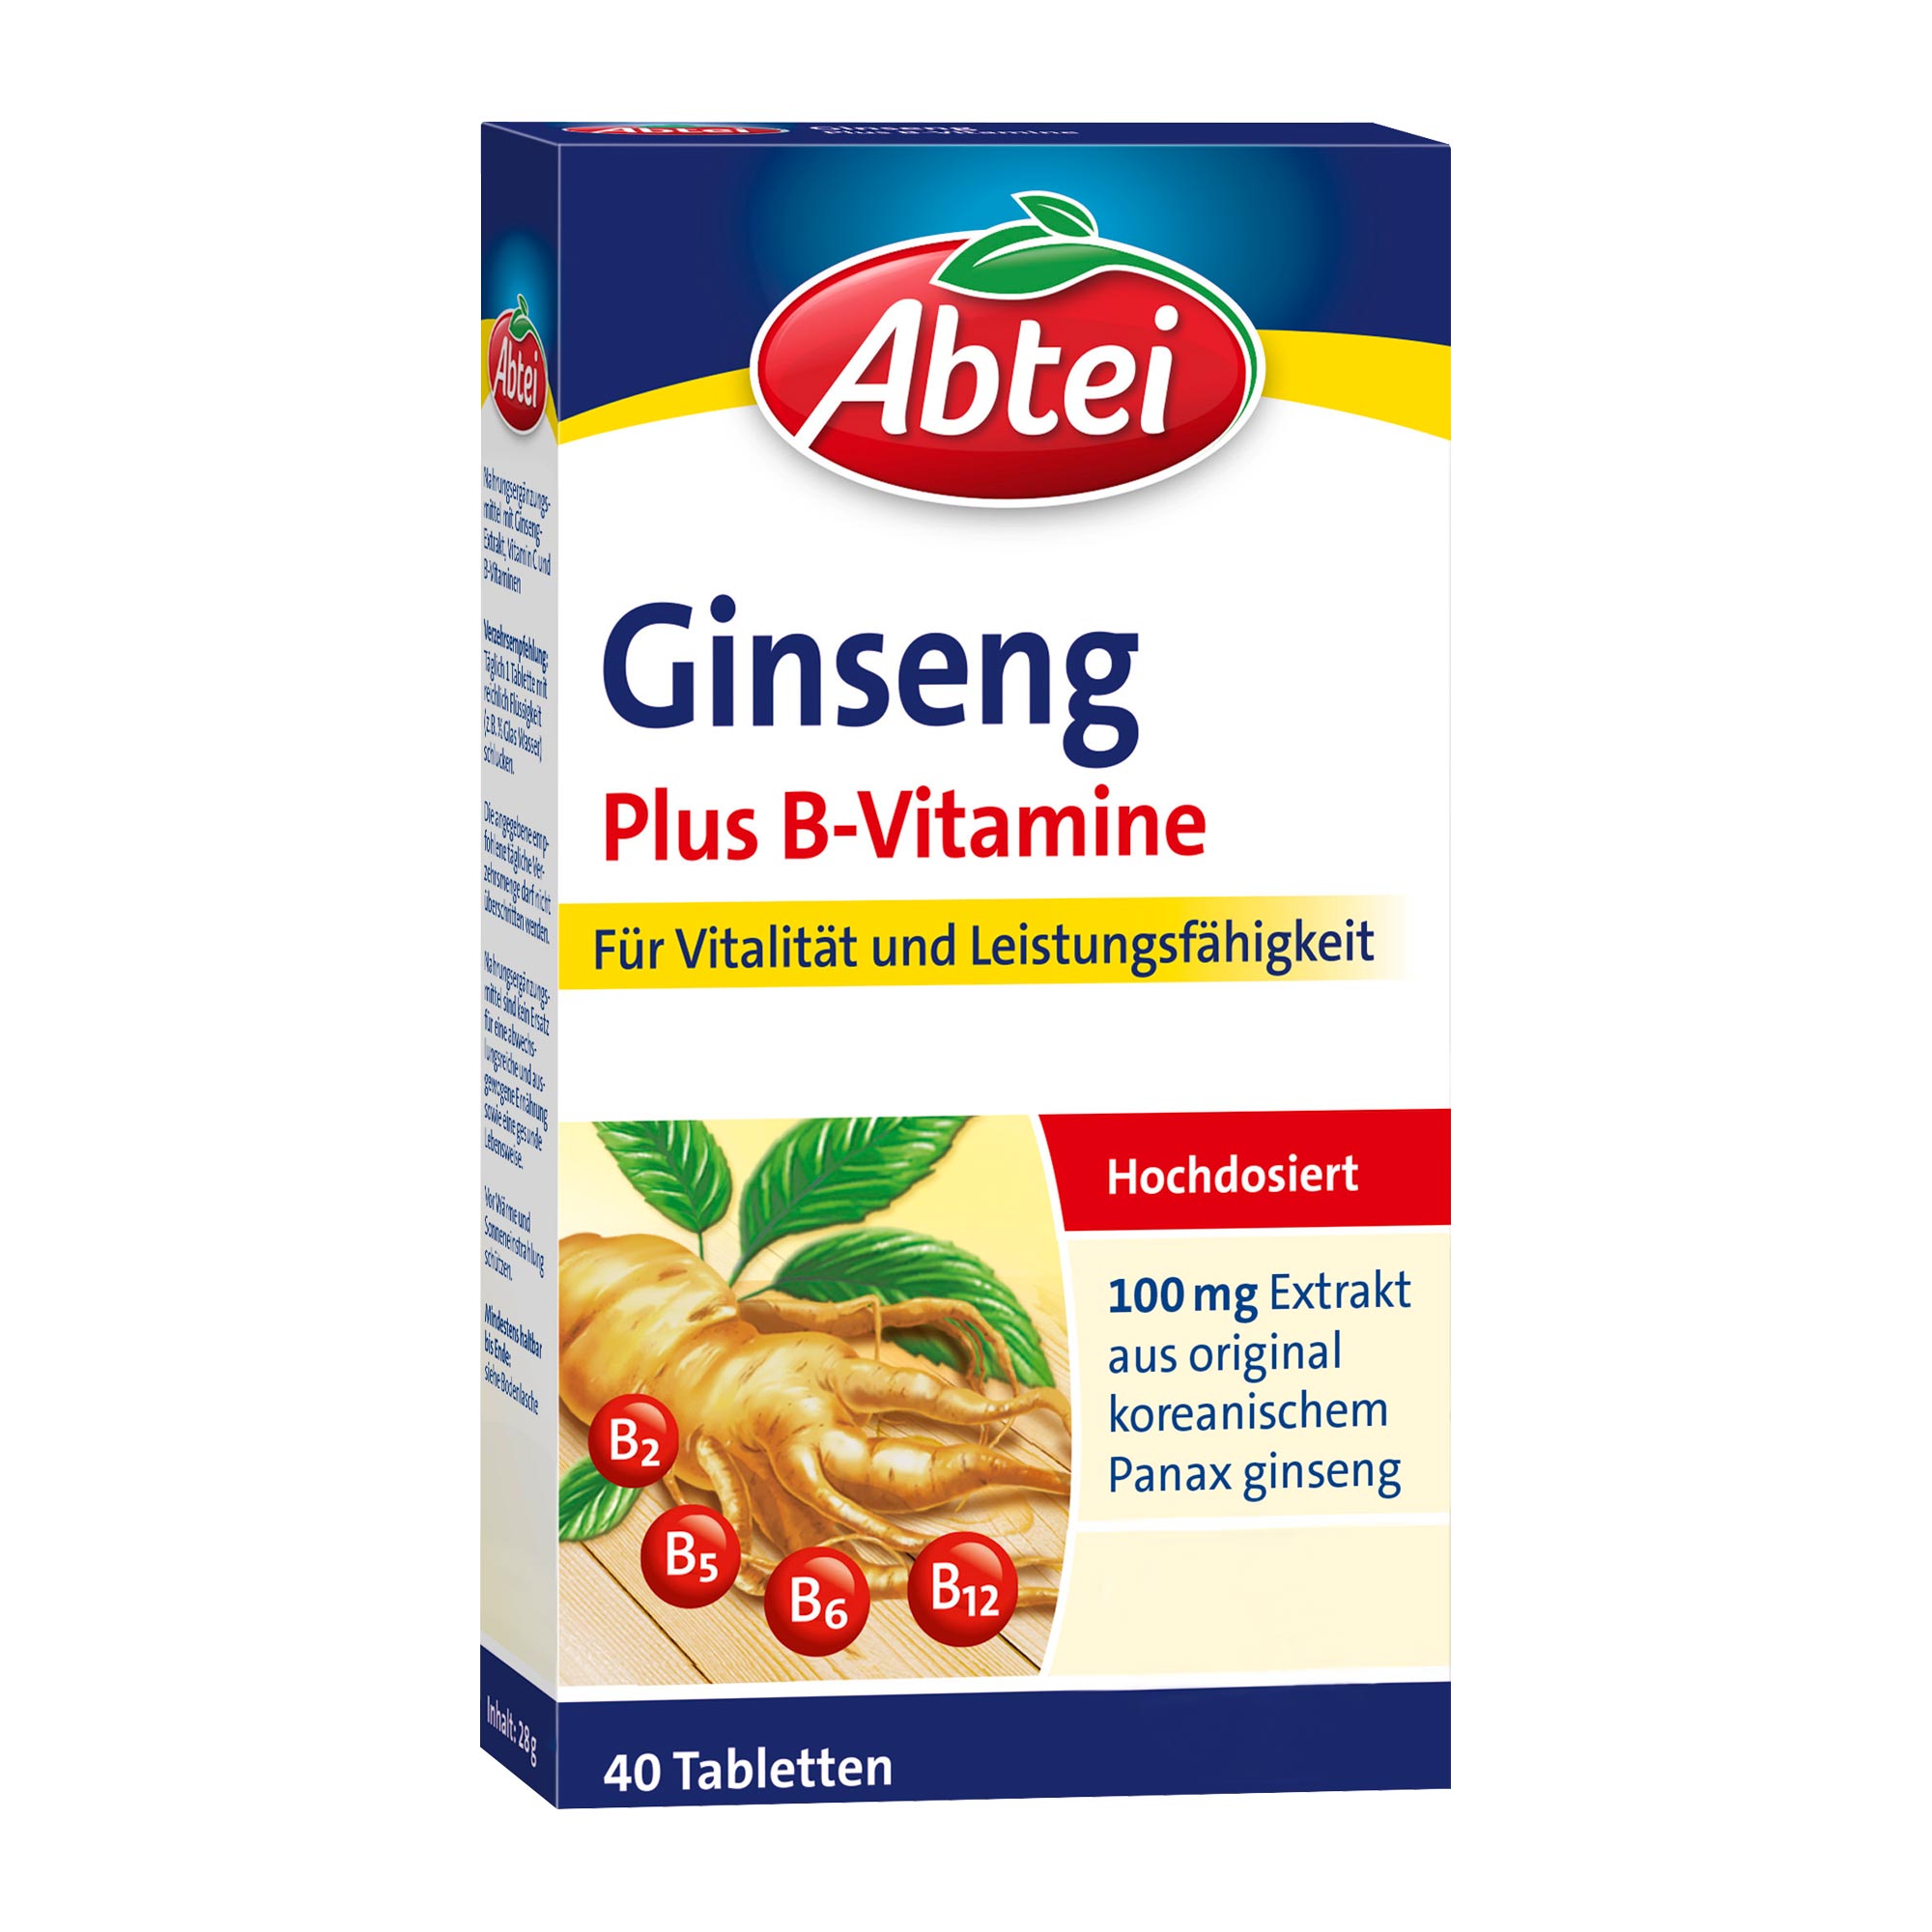 Nahrungsergänzungsmittel mit Ginseng-Extrakt, Vitamin C und B-Vitaminen.